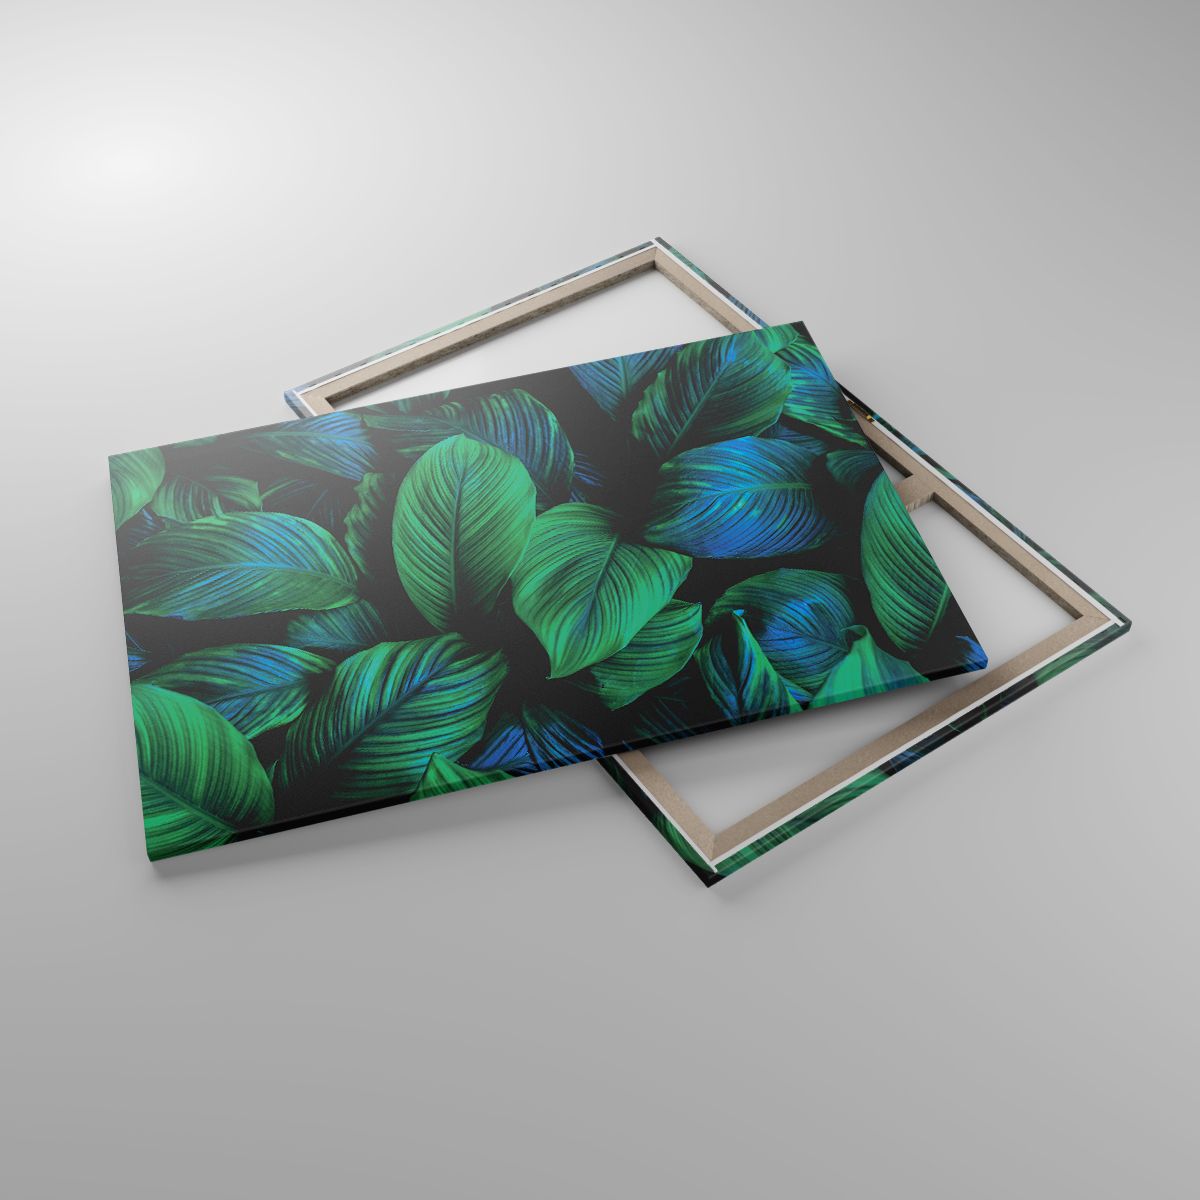 Leinwandbild Grüne Blätter, Leinwandbild Tropische Pflanze, Leinwandbild Natur, Leinwandbild Kunst, Leinwandbild Tropen